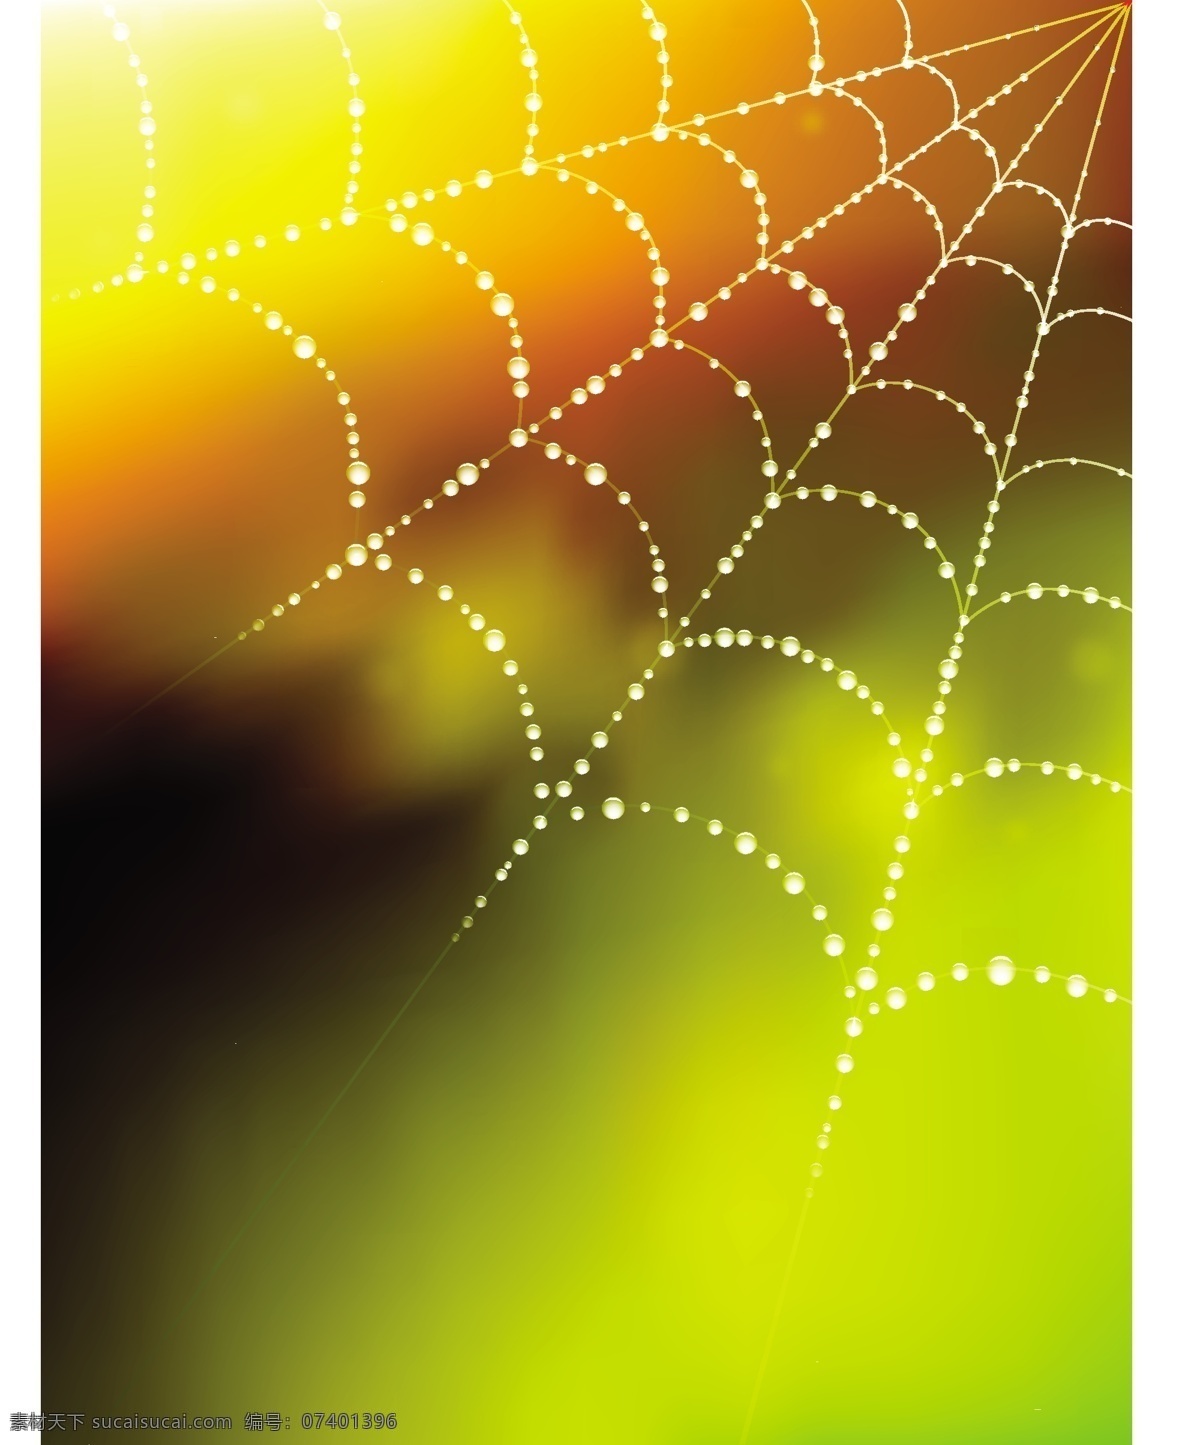 矢量 梦幻 蜘蛛网 背景 光斑 矢量素材 矢量图 花纹花边